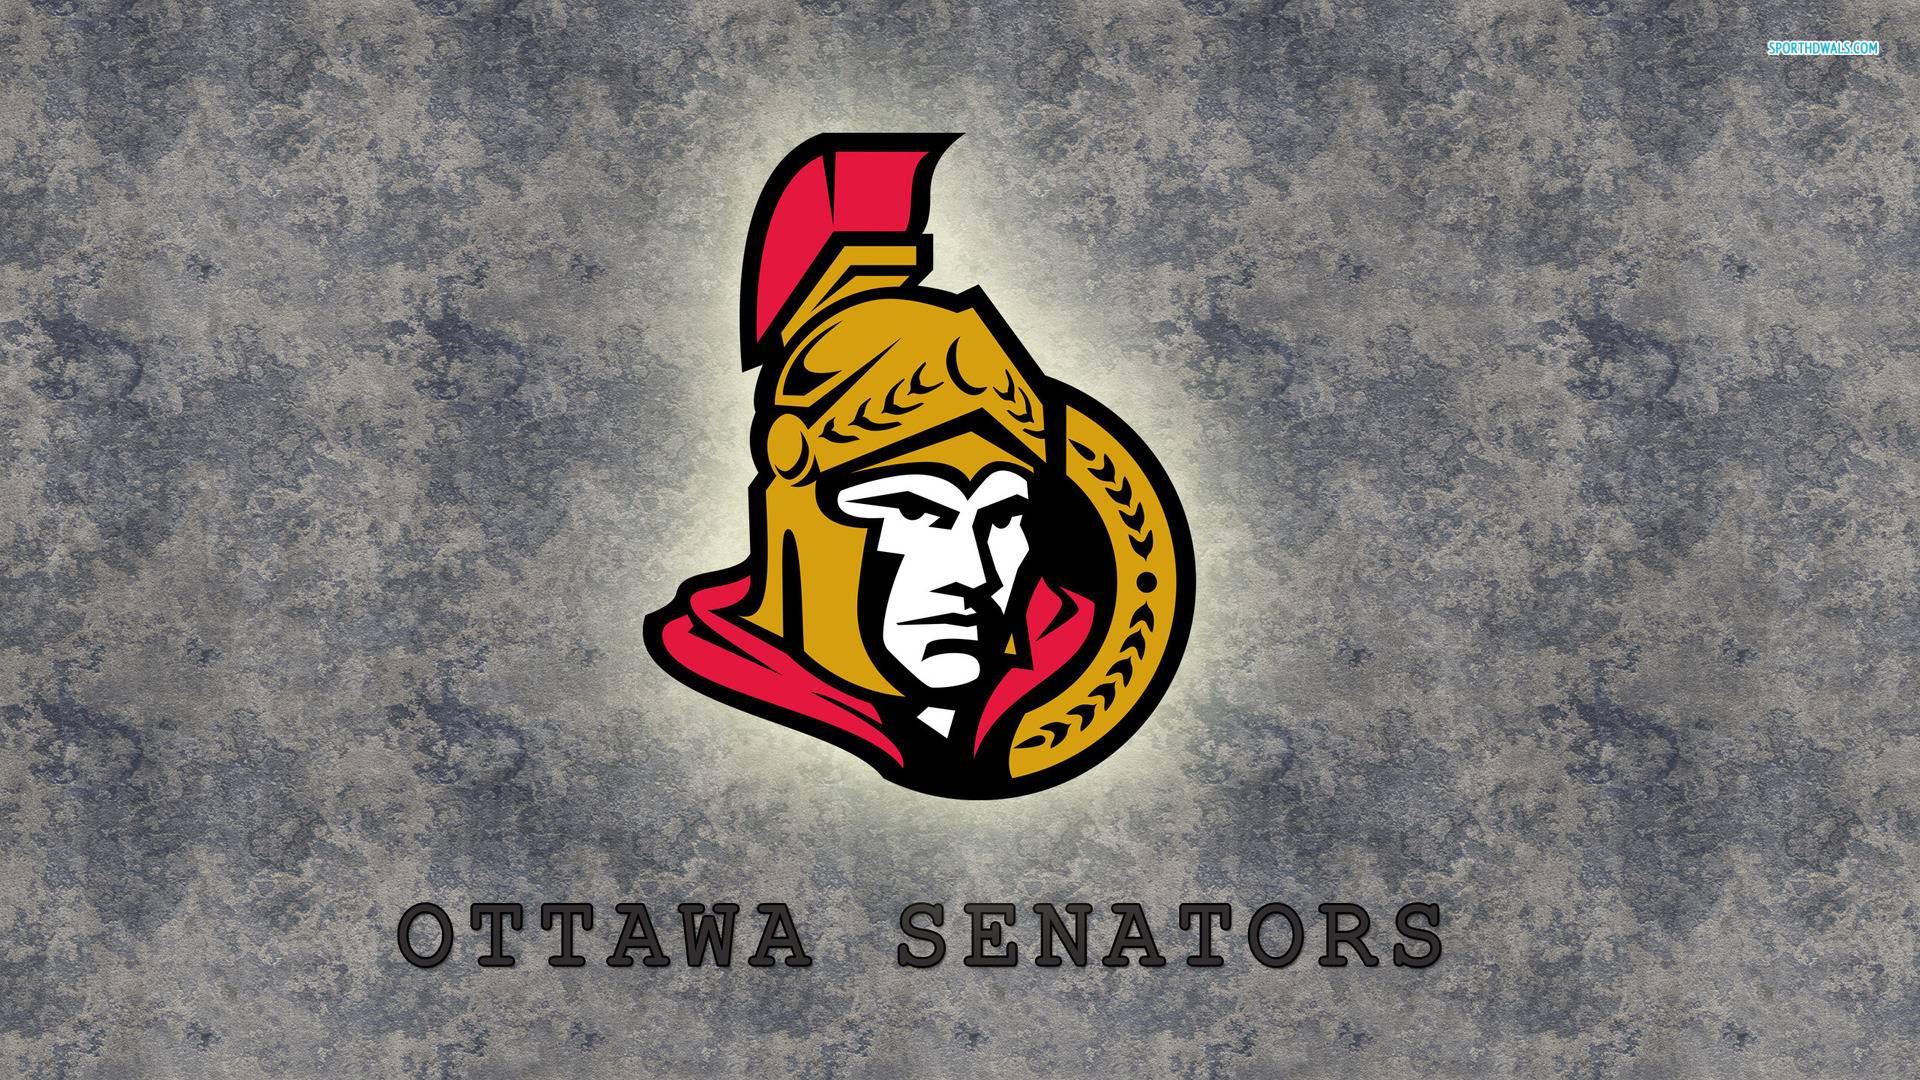 Ottawa Senators wallpaper. Ottawa Senators background